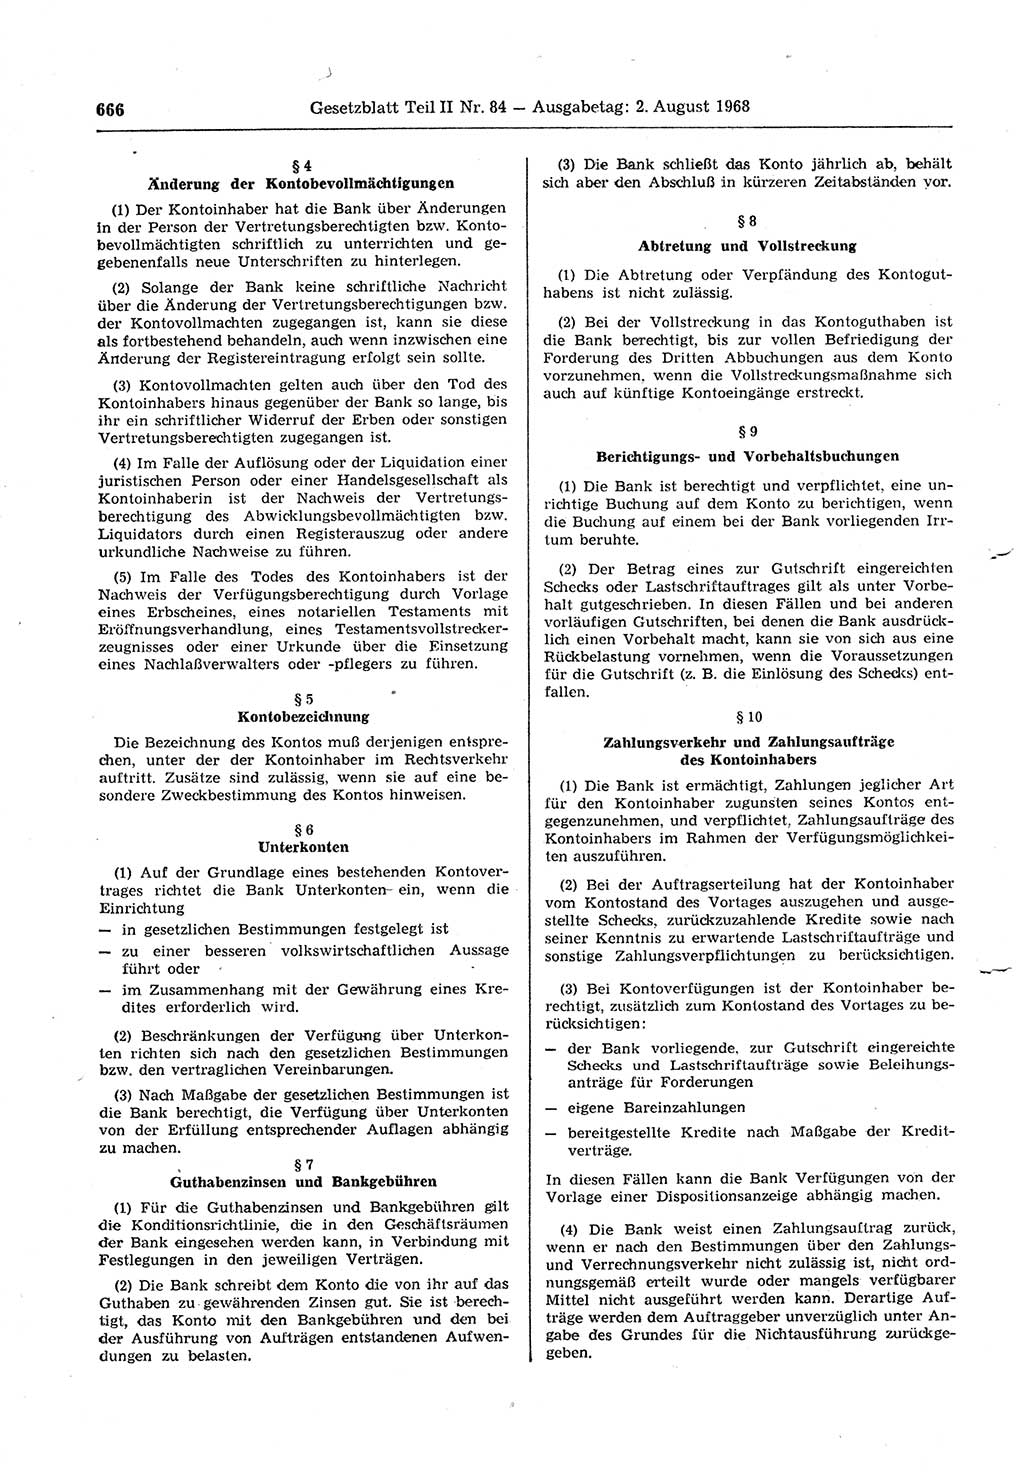 Gesetzblatt (GBl.) der Deutschen Demokratischen Republik (DDR) Teil ⅠⅠ 1968, Seite 666 (GBl. DDR ⅠⅠ 1968, S. 666)